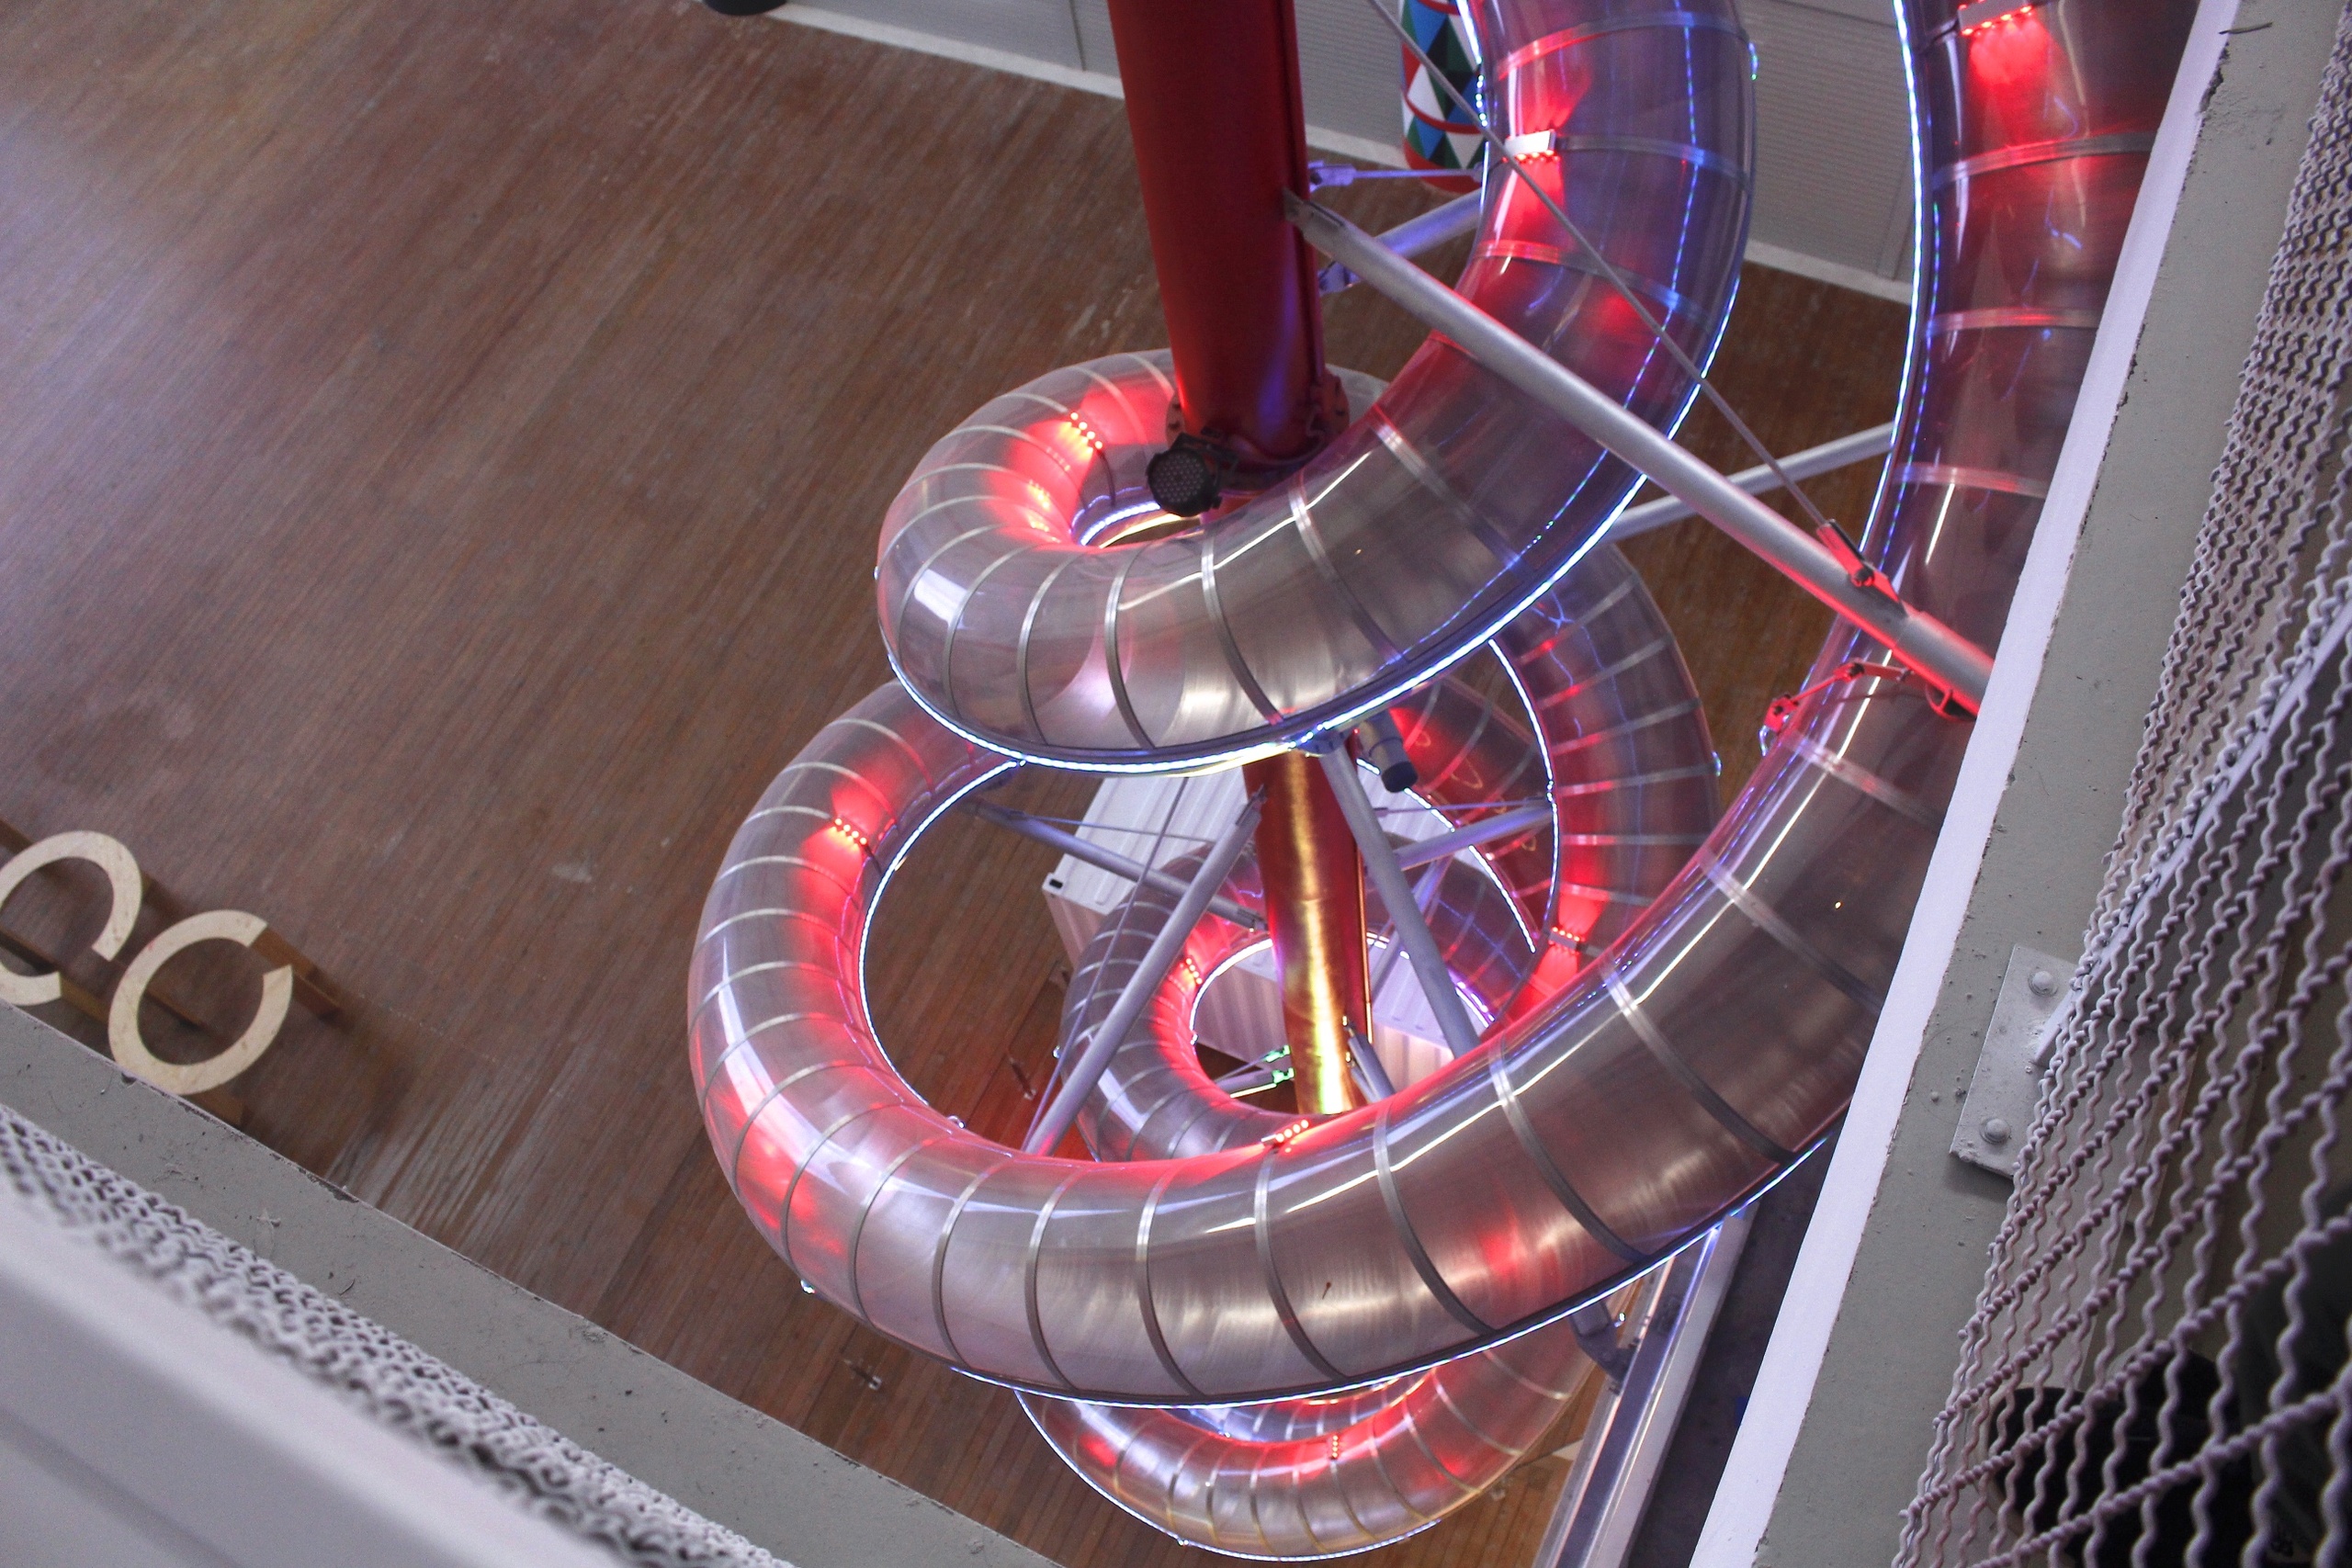 【花蓮 新天堂樂園】全世界室內最高雙螺旋溜滑梯。5樓滑到B1只需要12~15秒